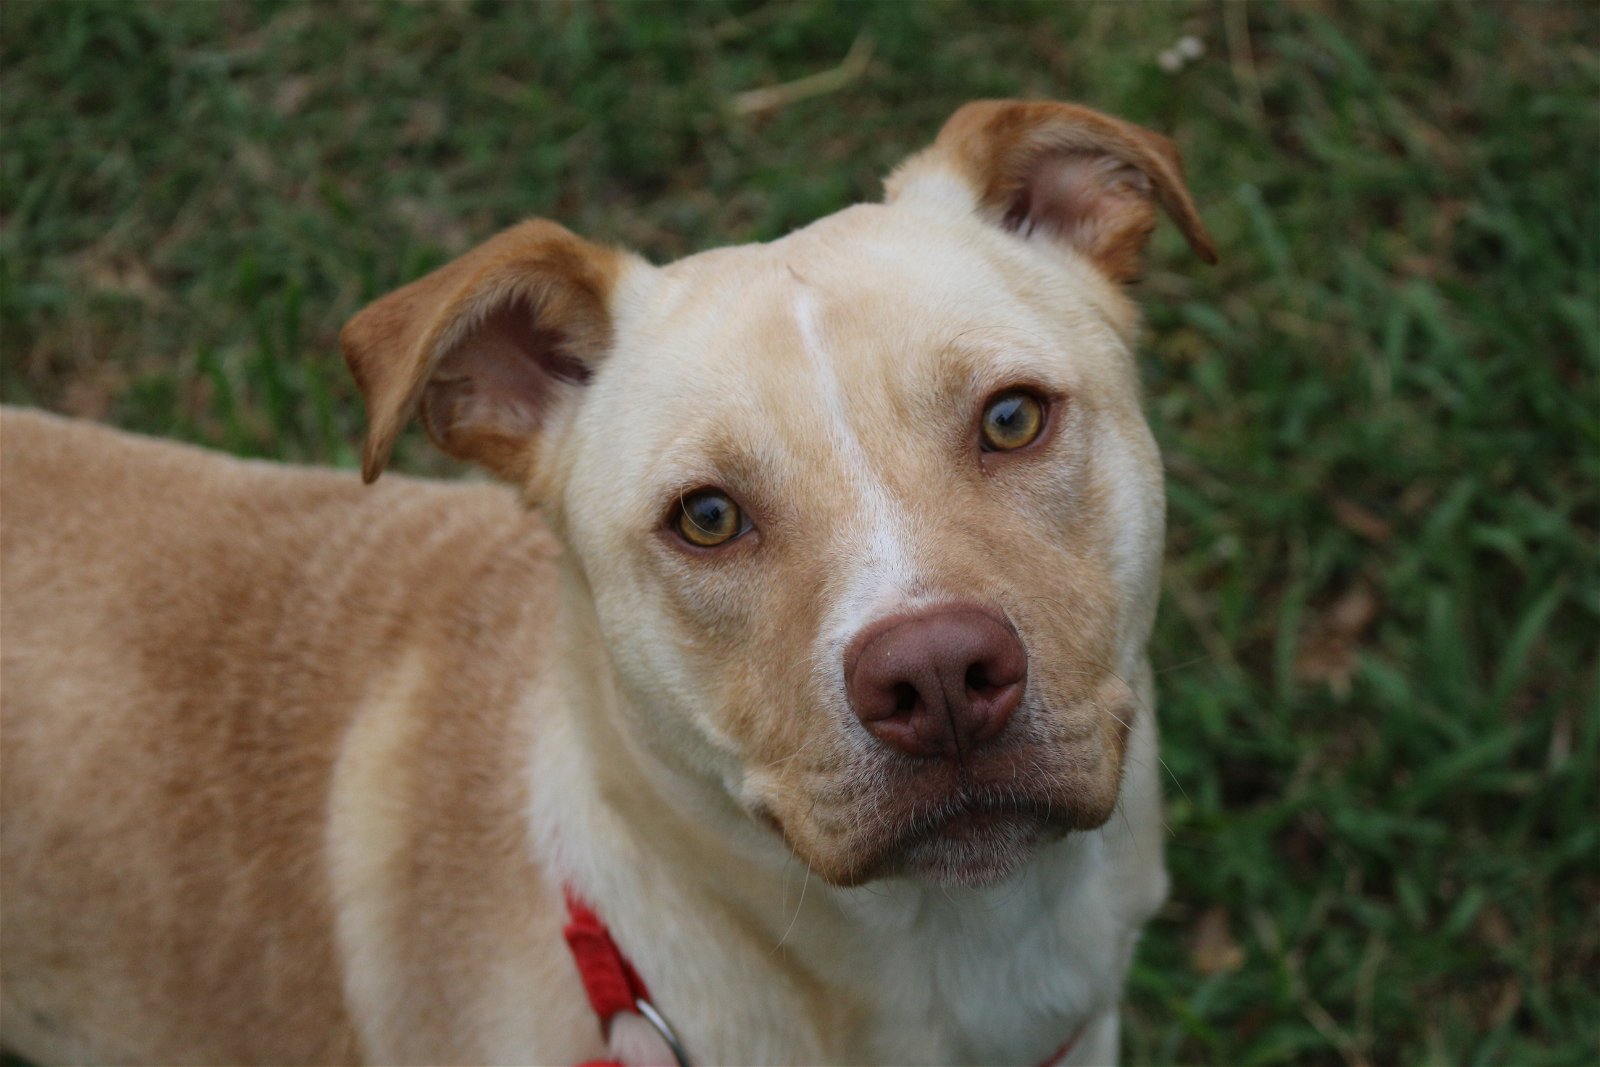 adoptable Dog in Jackson, MS named Yukon